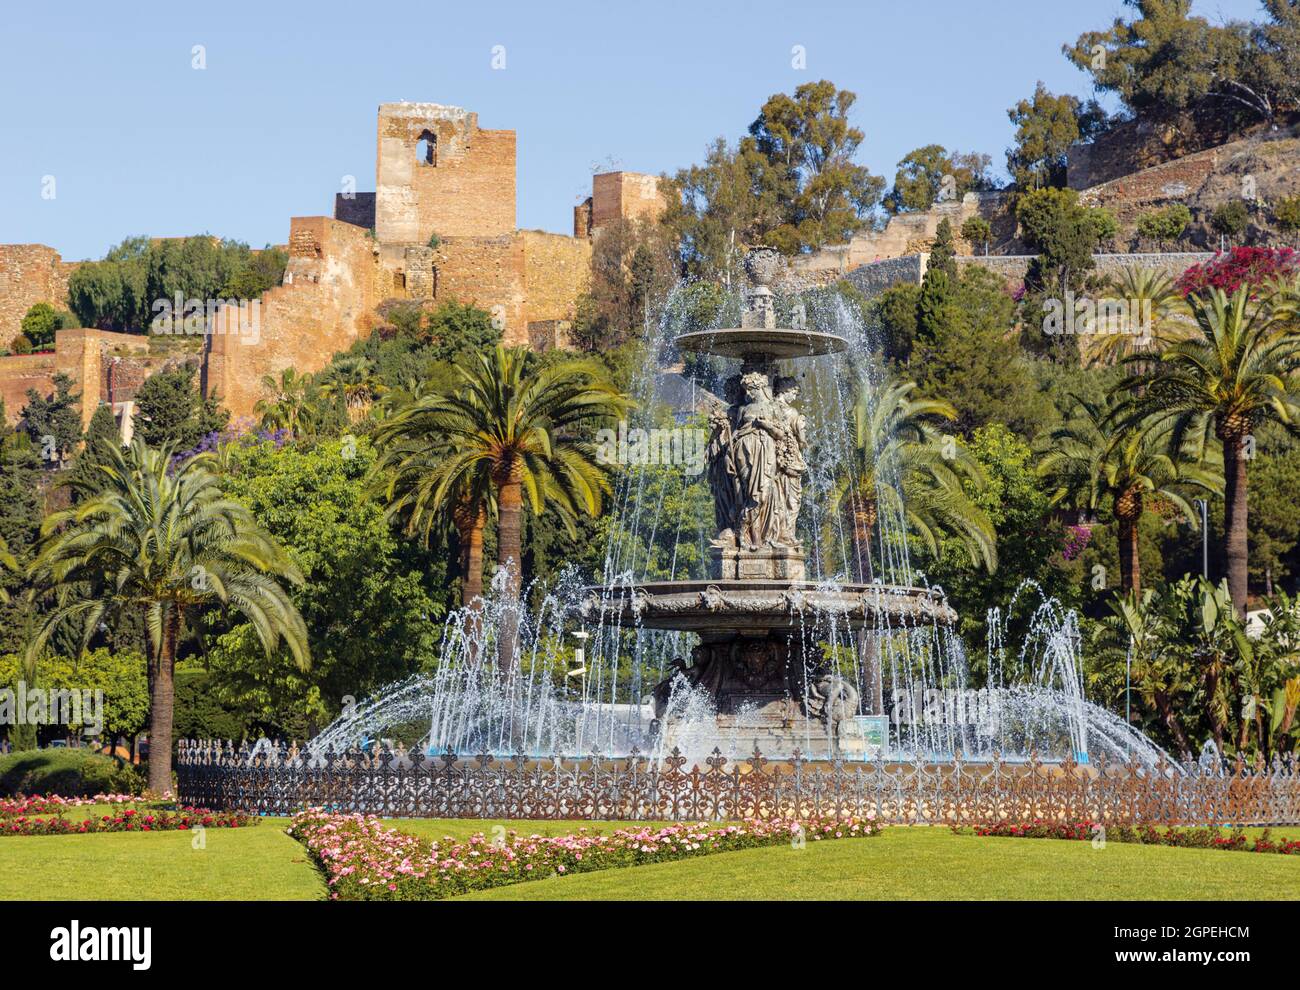 Fuente de las Tres Gracias también conocida como las Tres Ninfas en la Plaza del General Torrijos con la Alcazaba morisca, o fortaleza, detrás. Málaga, Cos Foto de stock